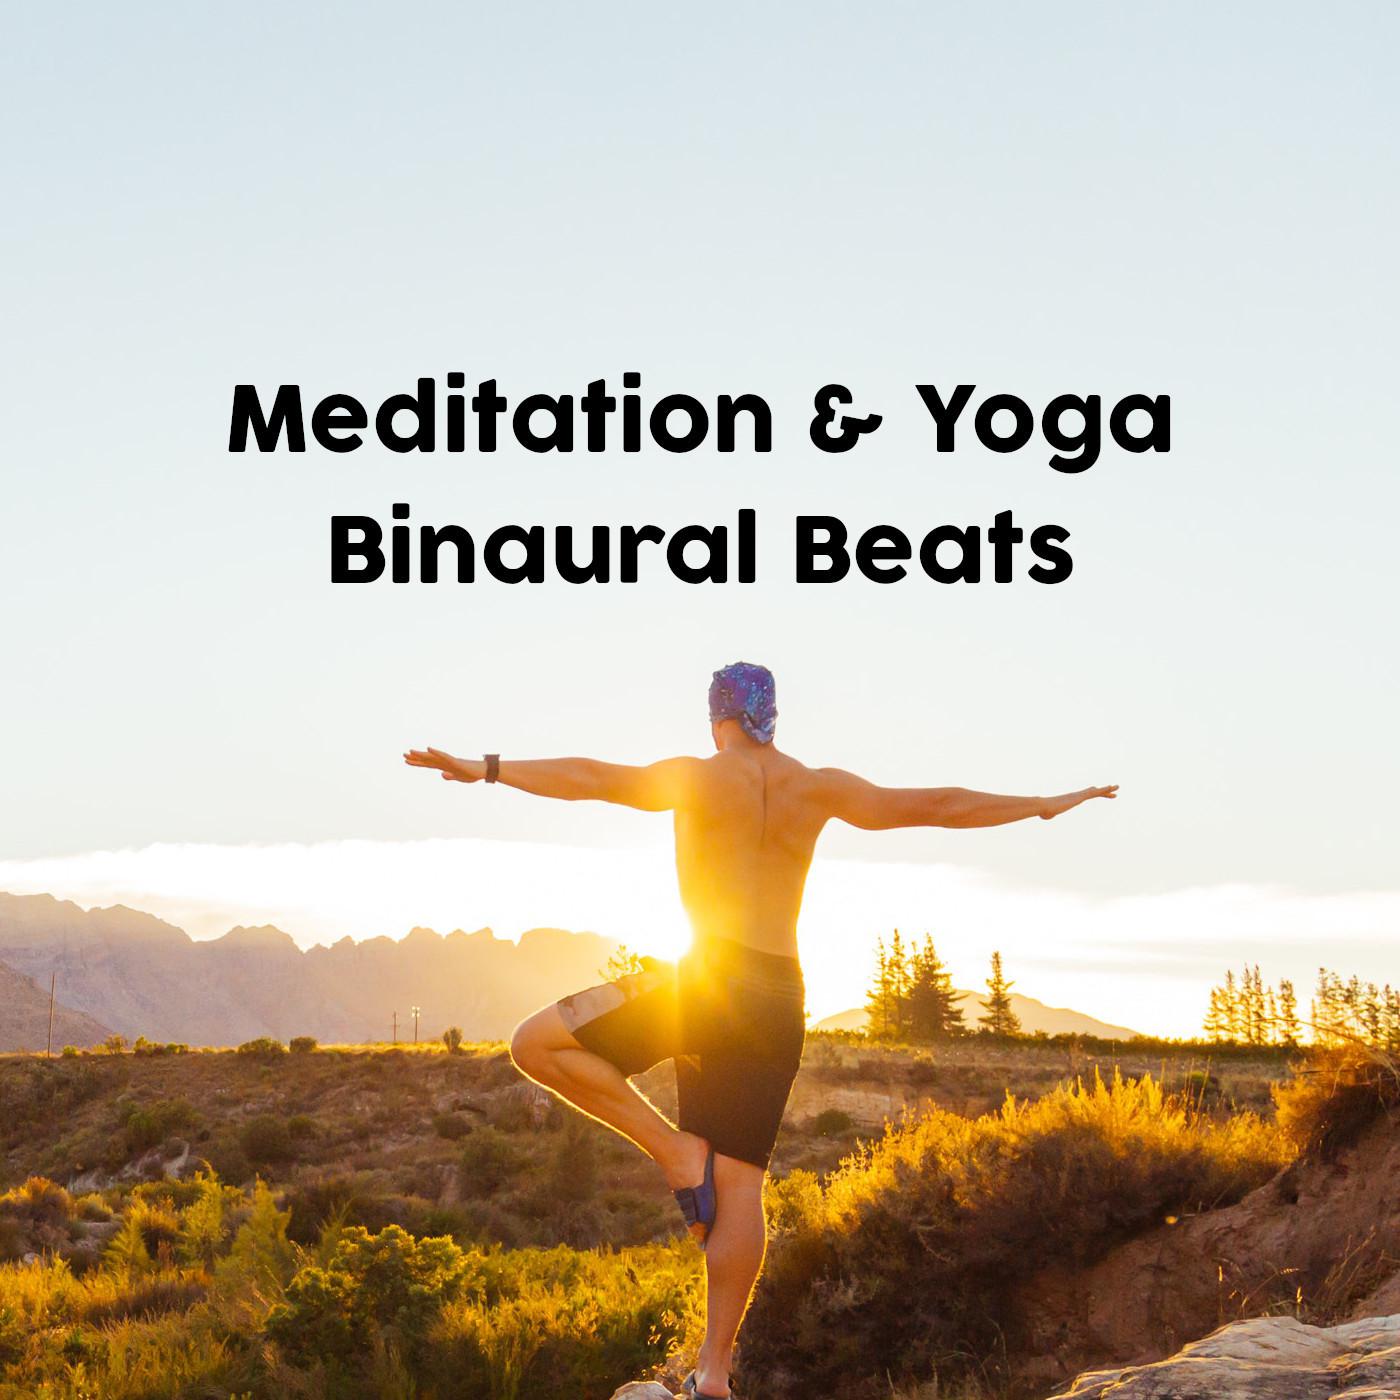 Meditation & Yoga Binaural Beats